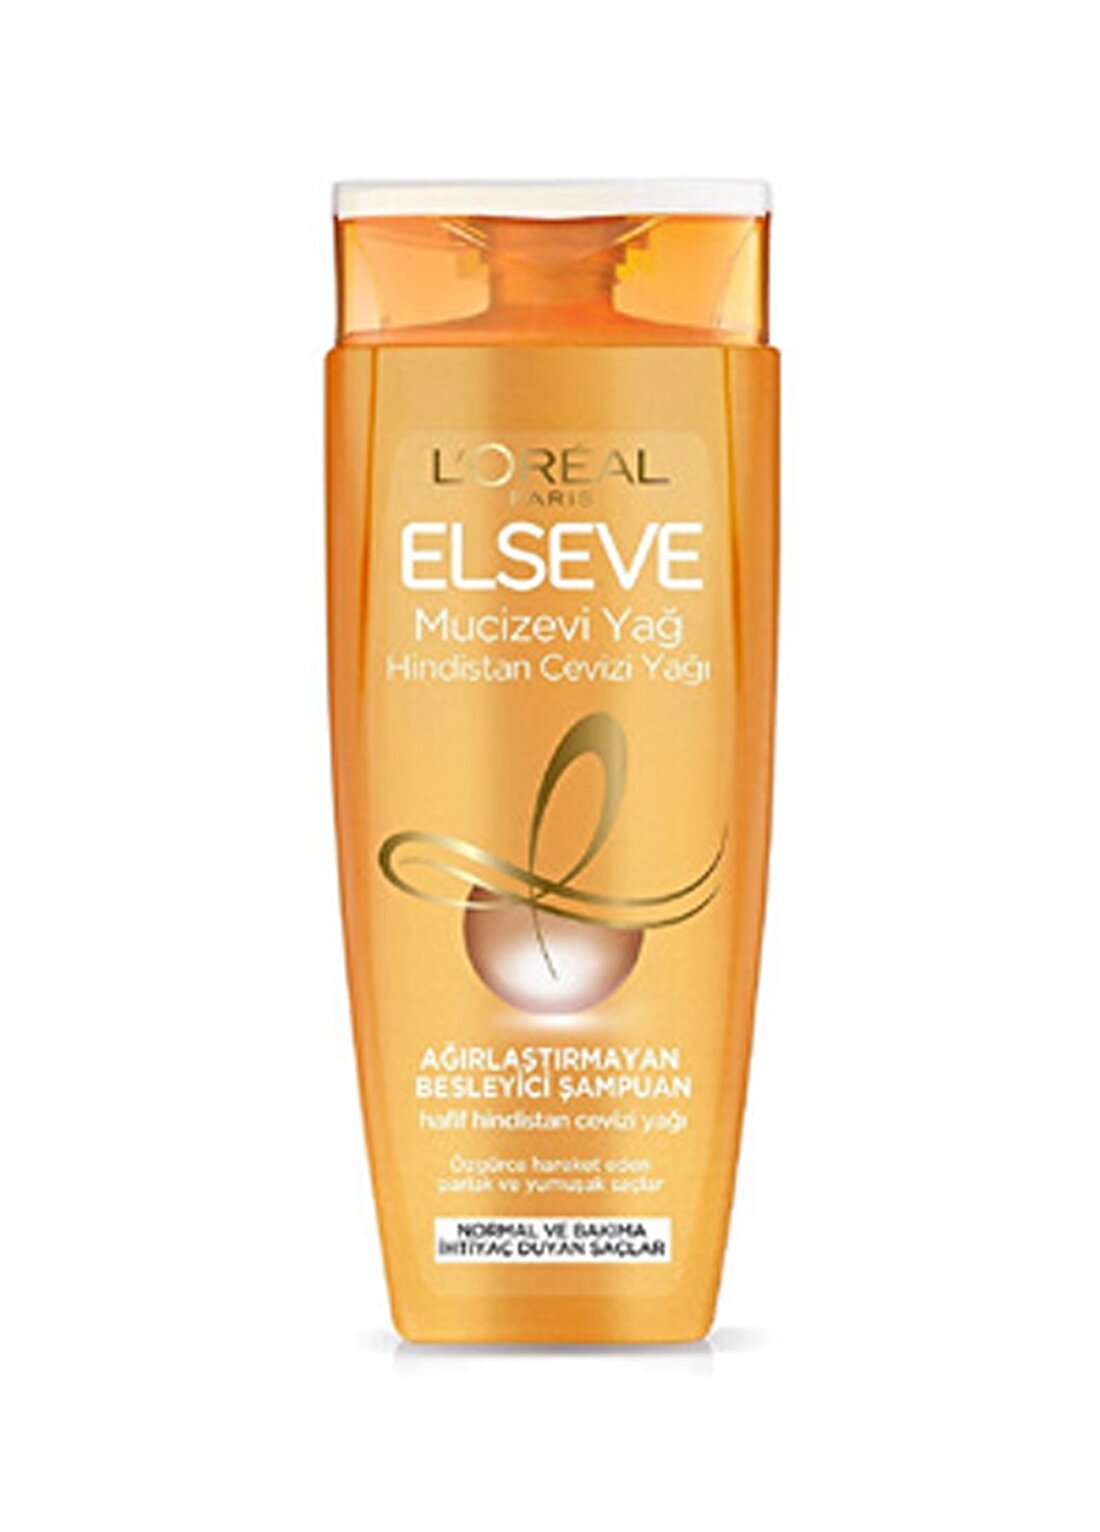 L'oréal Paris Elseve Mucizevi Hindistancevizi Yağı Ağırlaştırmayan Besleyici Şampuan 450 Ml